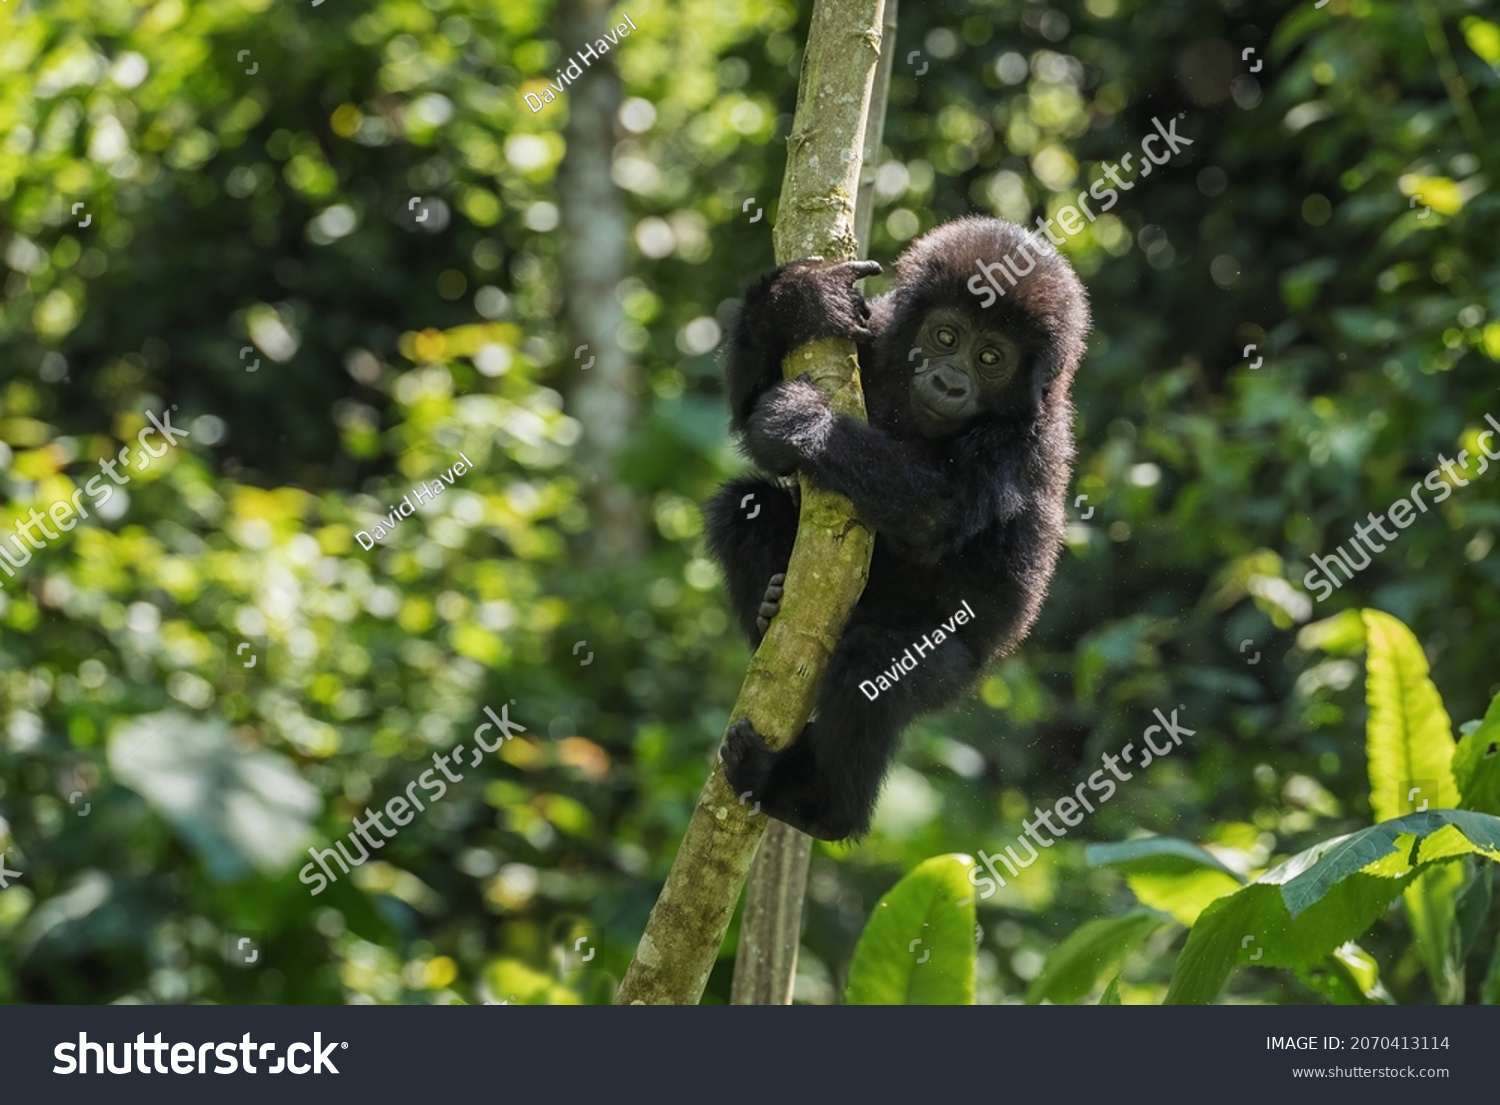 Mountain gorilla - Gorilla beringei, endangered popular large ape from African montane forests, Bwindi, Uganda. #2070413114